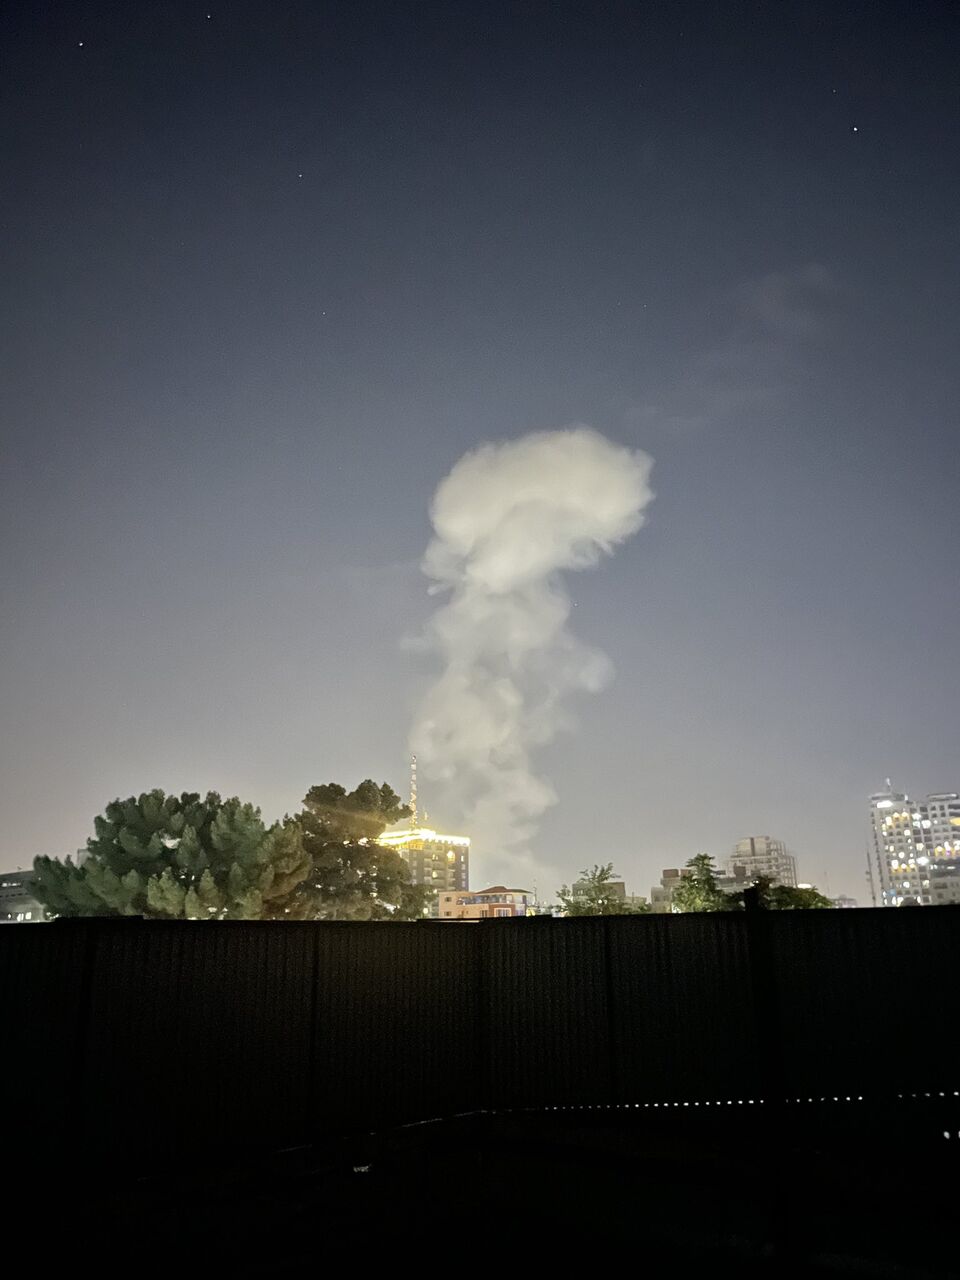 انفجار در مرکز کابل